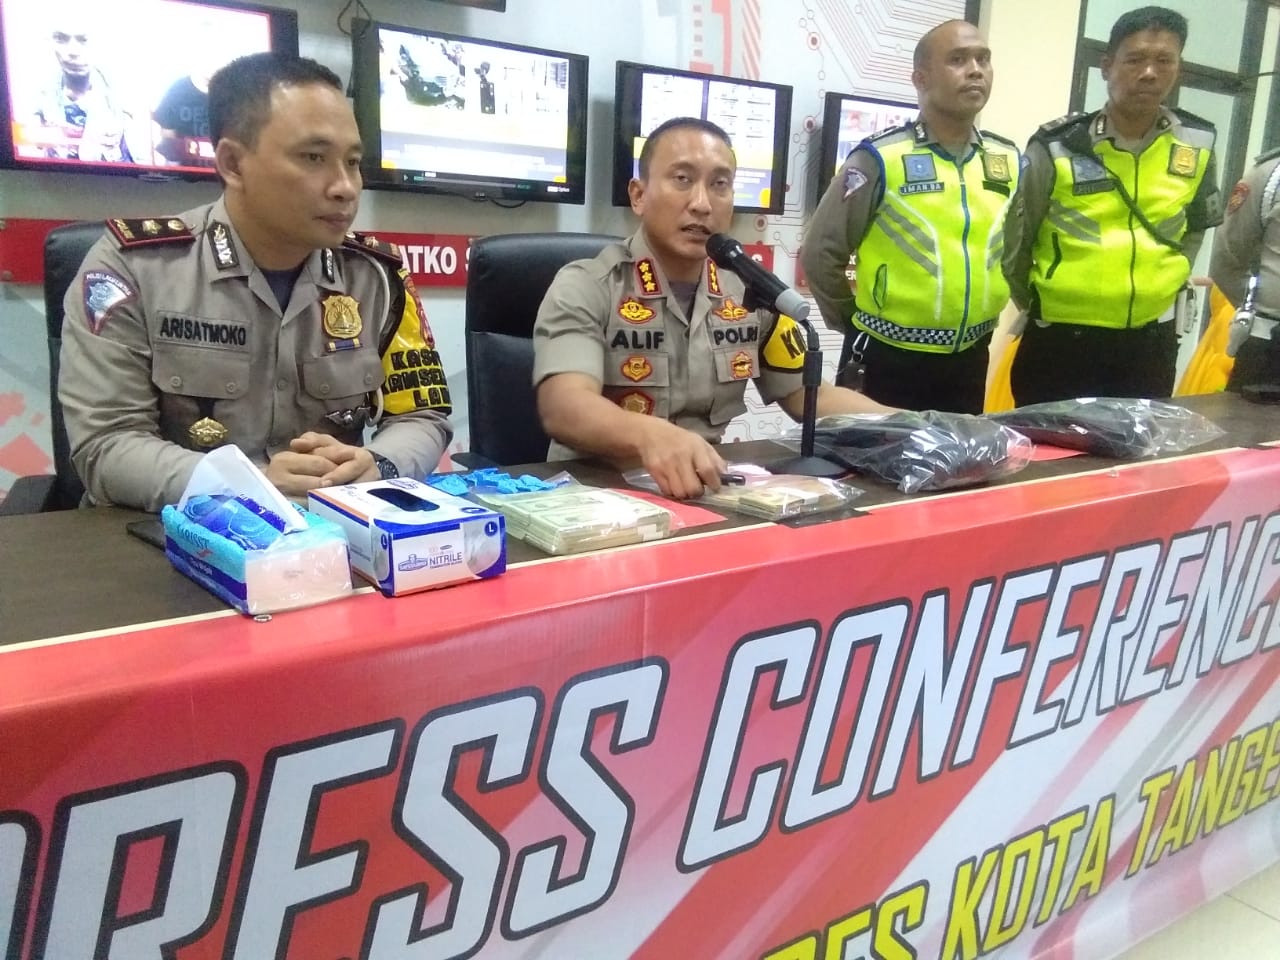 Kaploresta Tangerang Kombes Pol Sabilul Alif bersama jajarannya saat menunjukan barang bukti sejumlah uang palsu dalam konferensi pers di Mapolresta Tangerang.